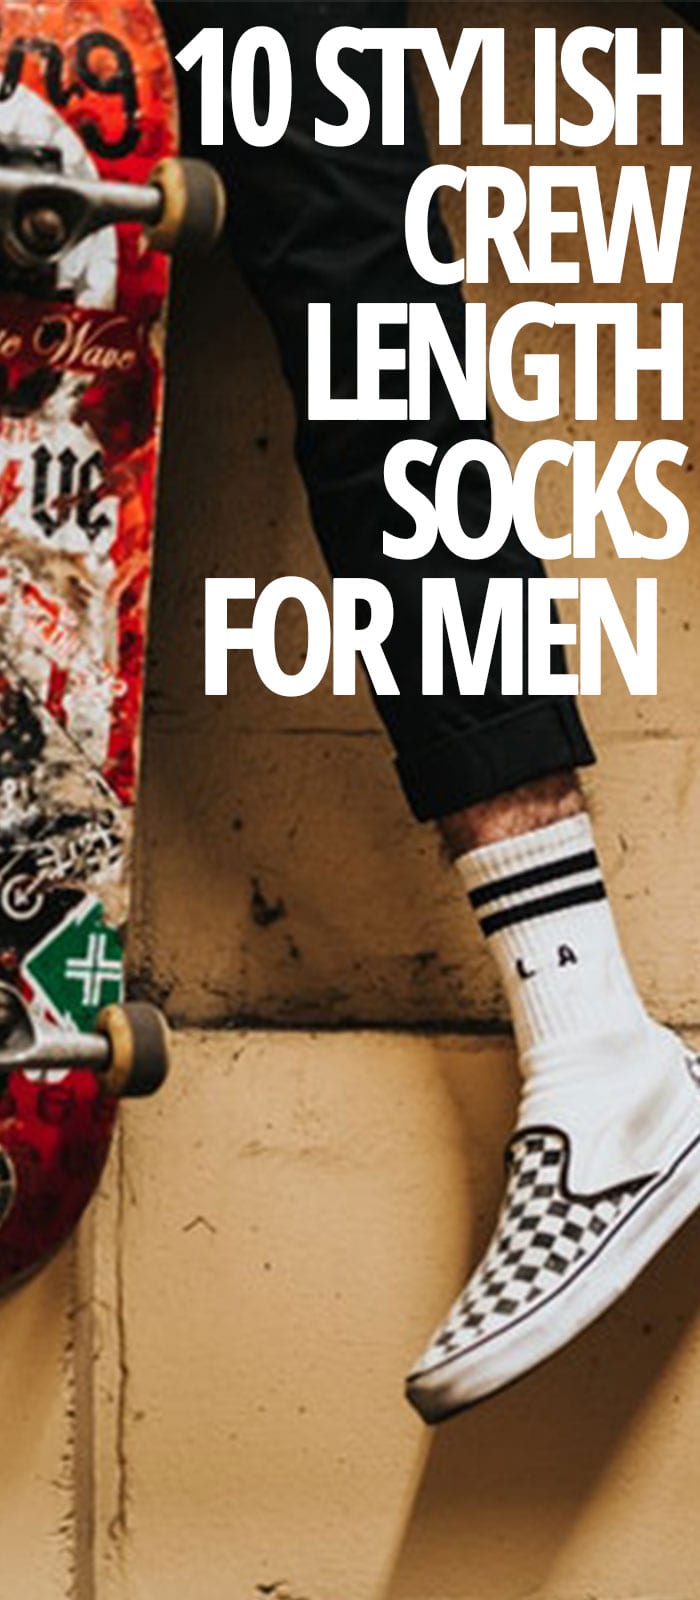 10 CREW LENGTH SOCKS FOR MEN